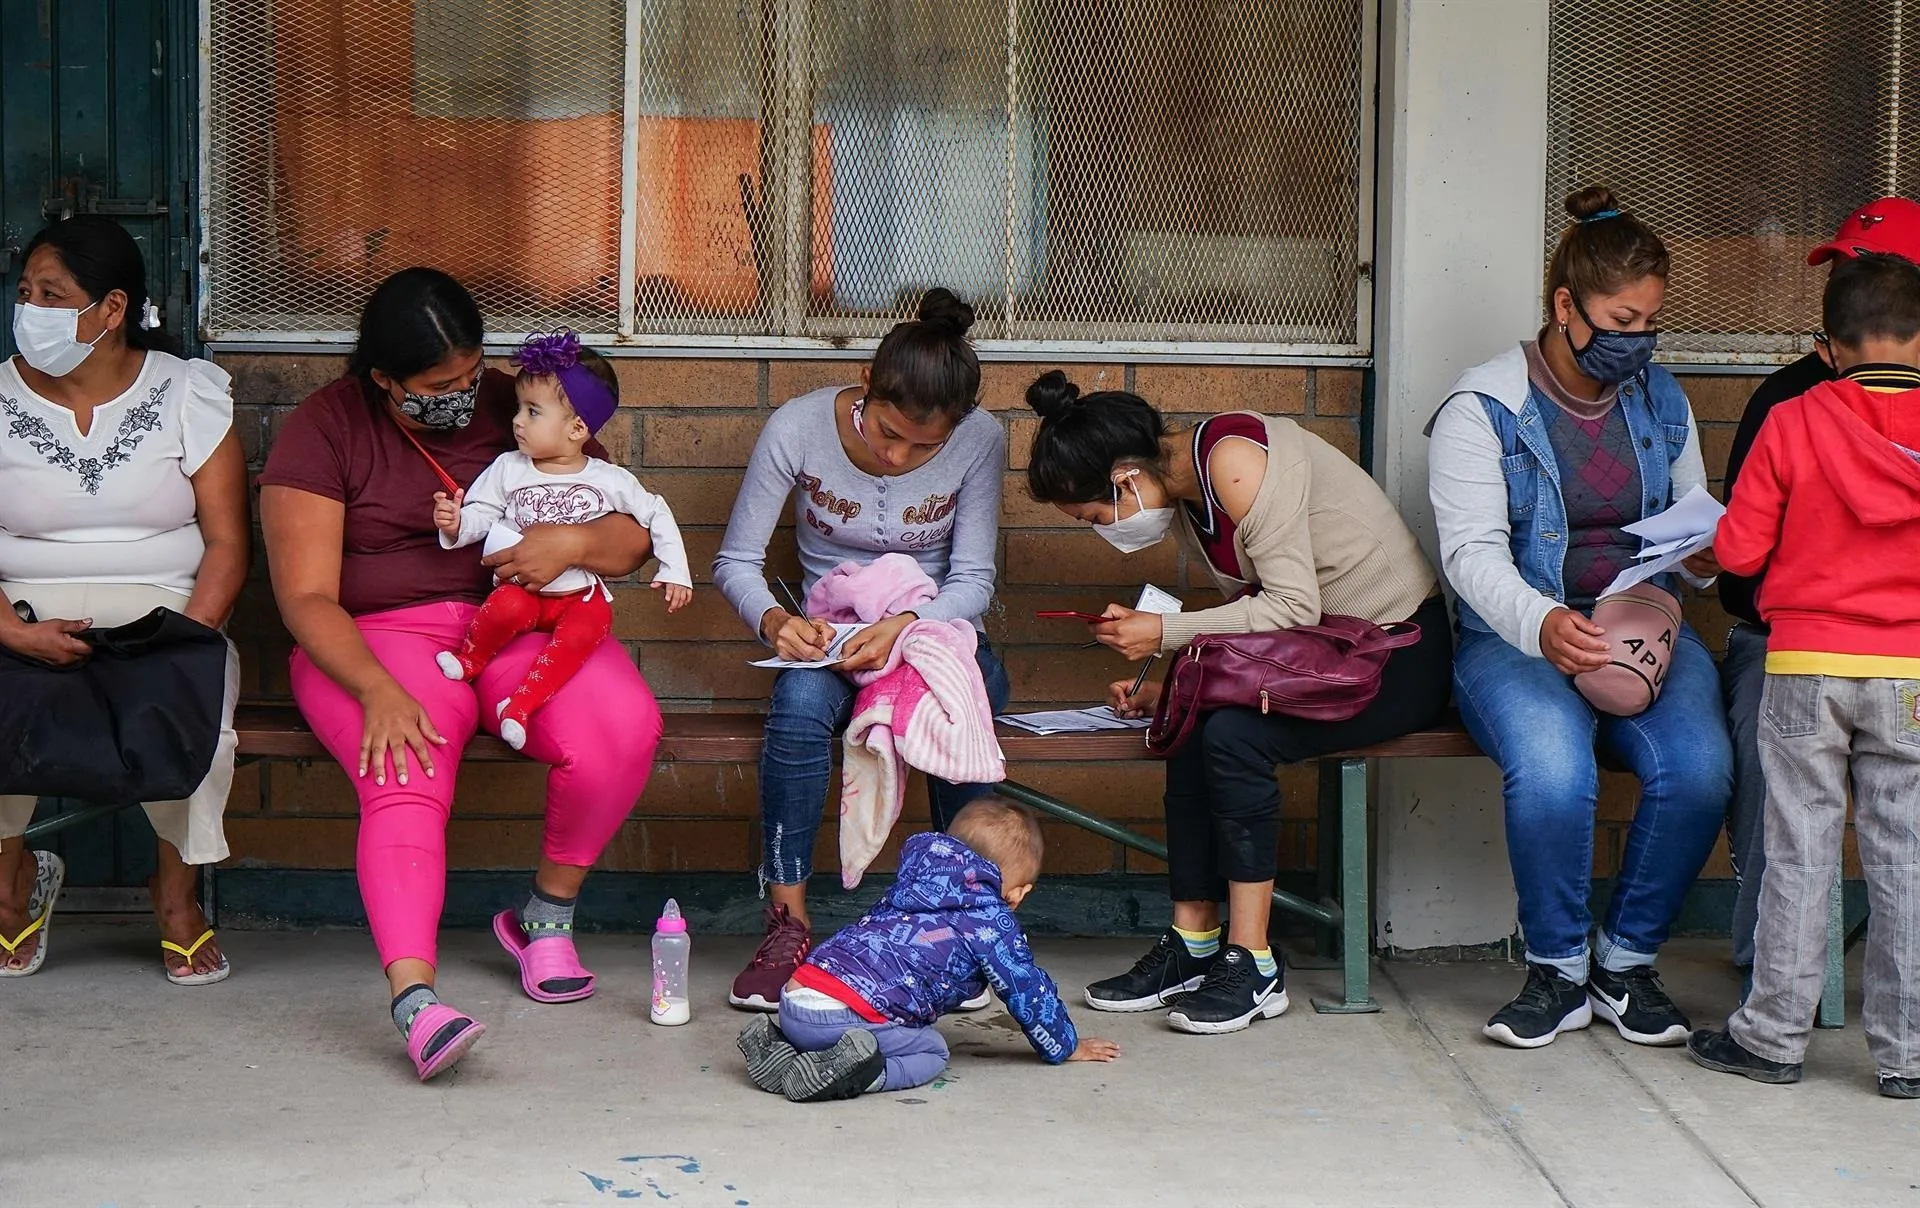 Juez de EEUU prohíbe expulsar a familias migrantes sin dejarles pedir asilo